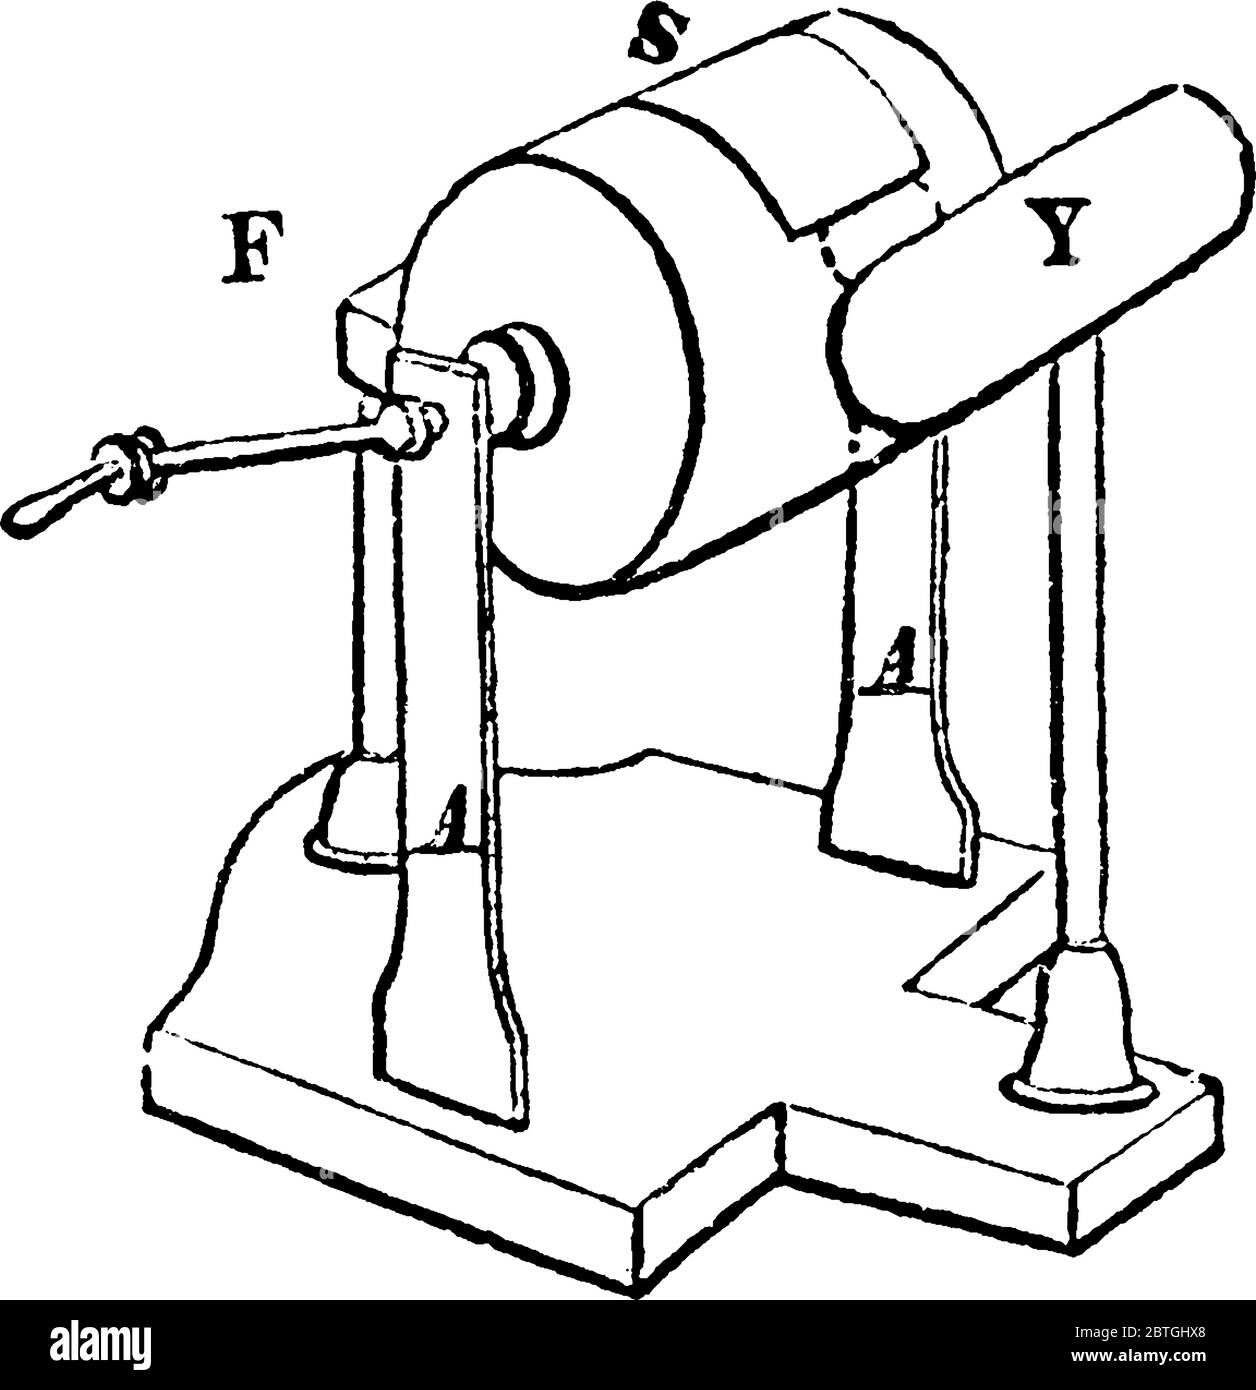 Une forme de machine électrique, avec les pièces, 'S', étant le cylindre en verre tournant sur un axe, 'y', le conducteur, 'F', le caoutchouc et 'A', qui Illustration de Vecteur